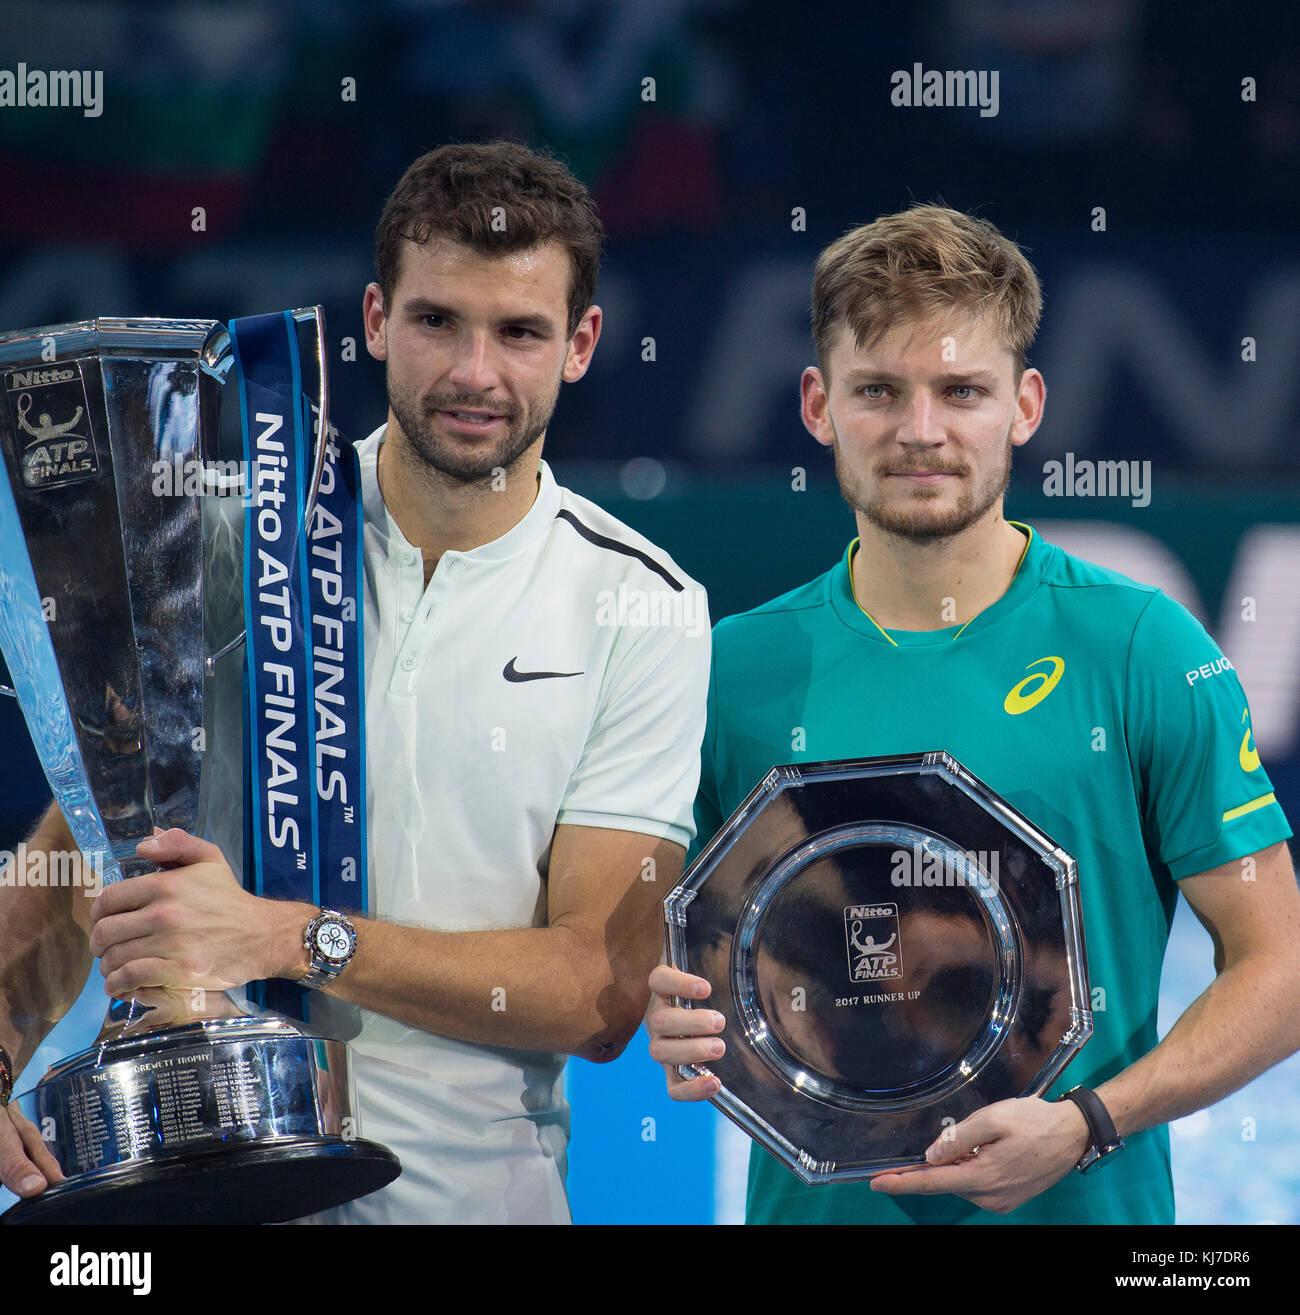 19 novembre 2017. Grigor Dimitrov avec Winners Trophy et David Goffin avec Runners Up Trophy, Nitto ATP Finals 2017. Crédit: Malcolm Park/Alay Banque D'Images